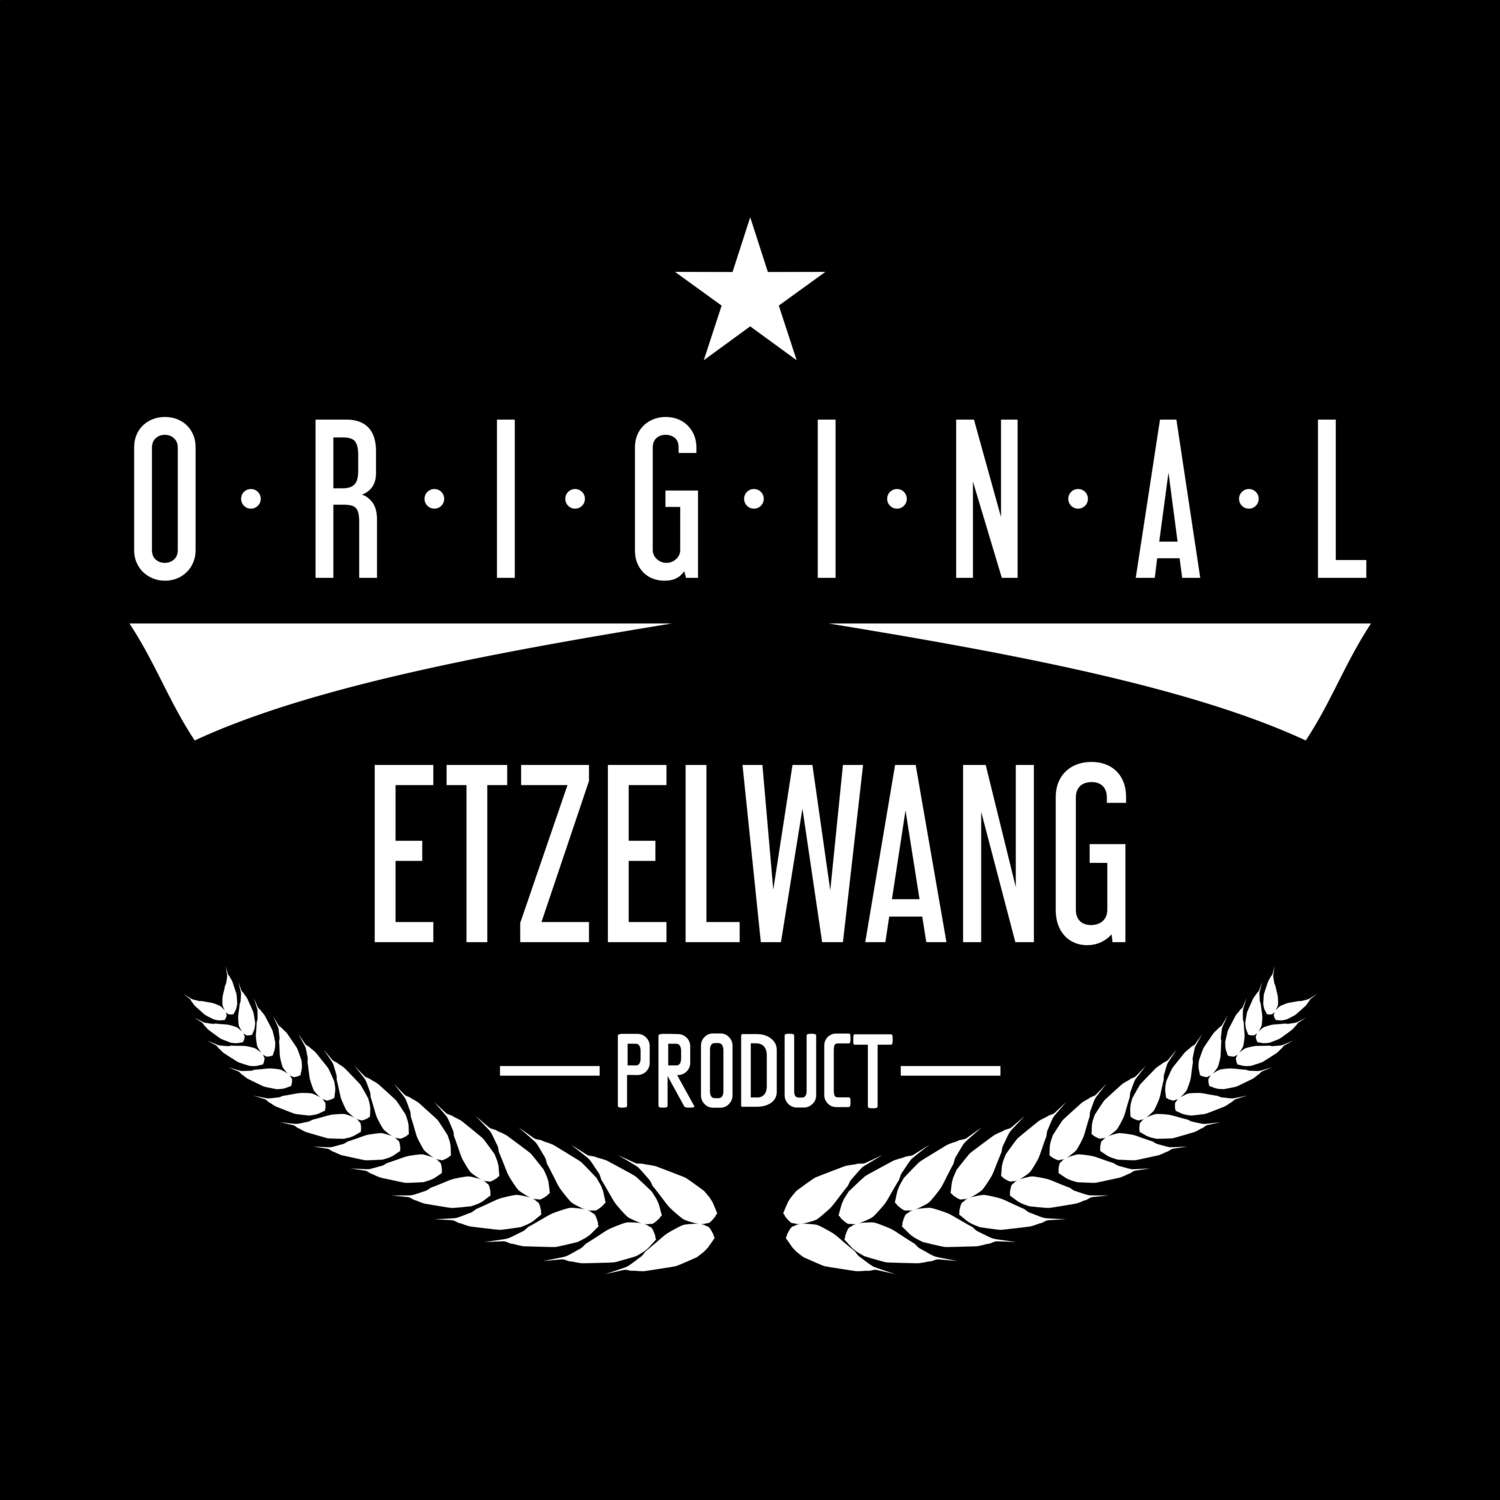 Etzelwang T-Shirt »Original Product«